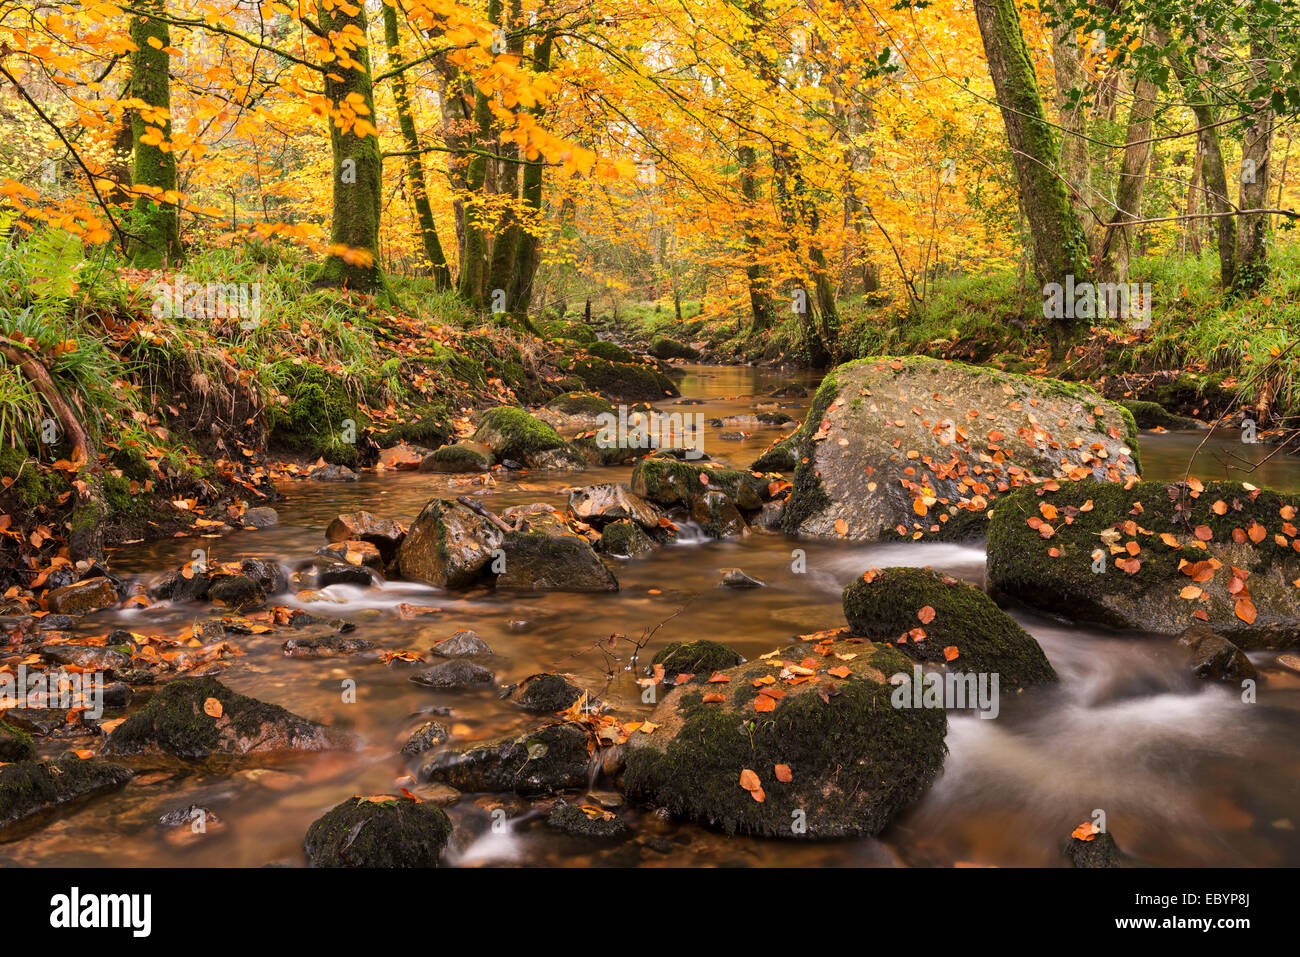 River Teign entouré par des arbres d'automne, Dartmoor, dans le Devon, Angleterre. L'automne (novembre) 2014. Banque D'Images